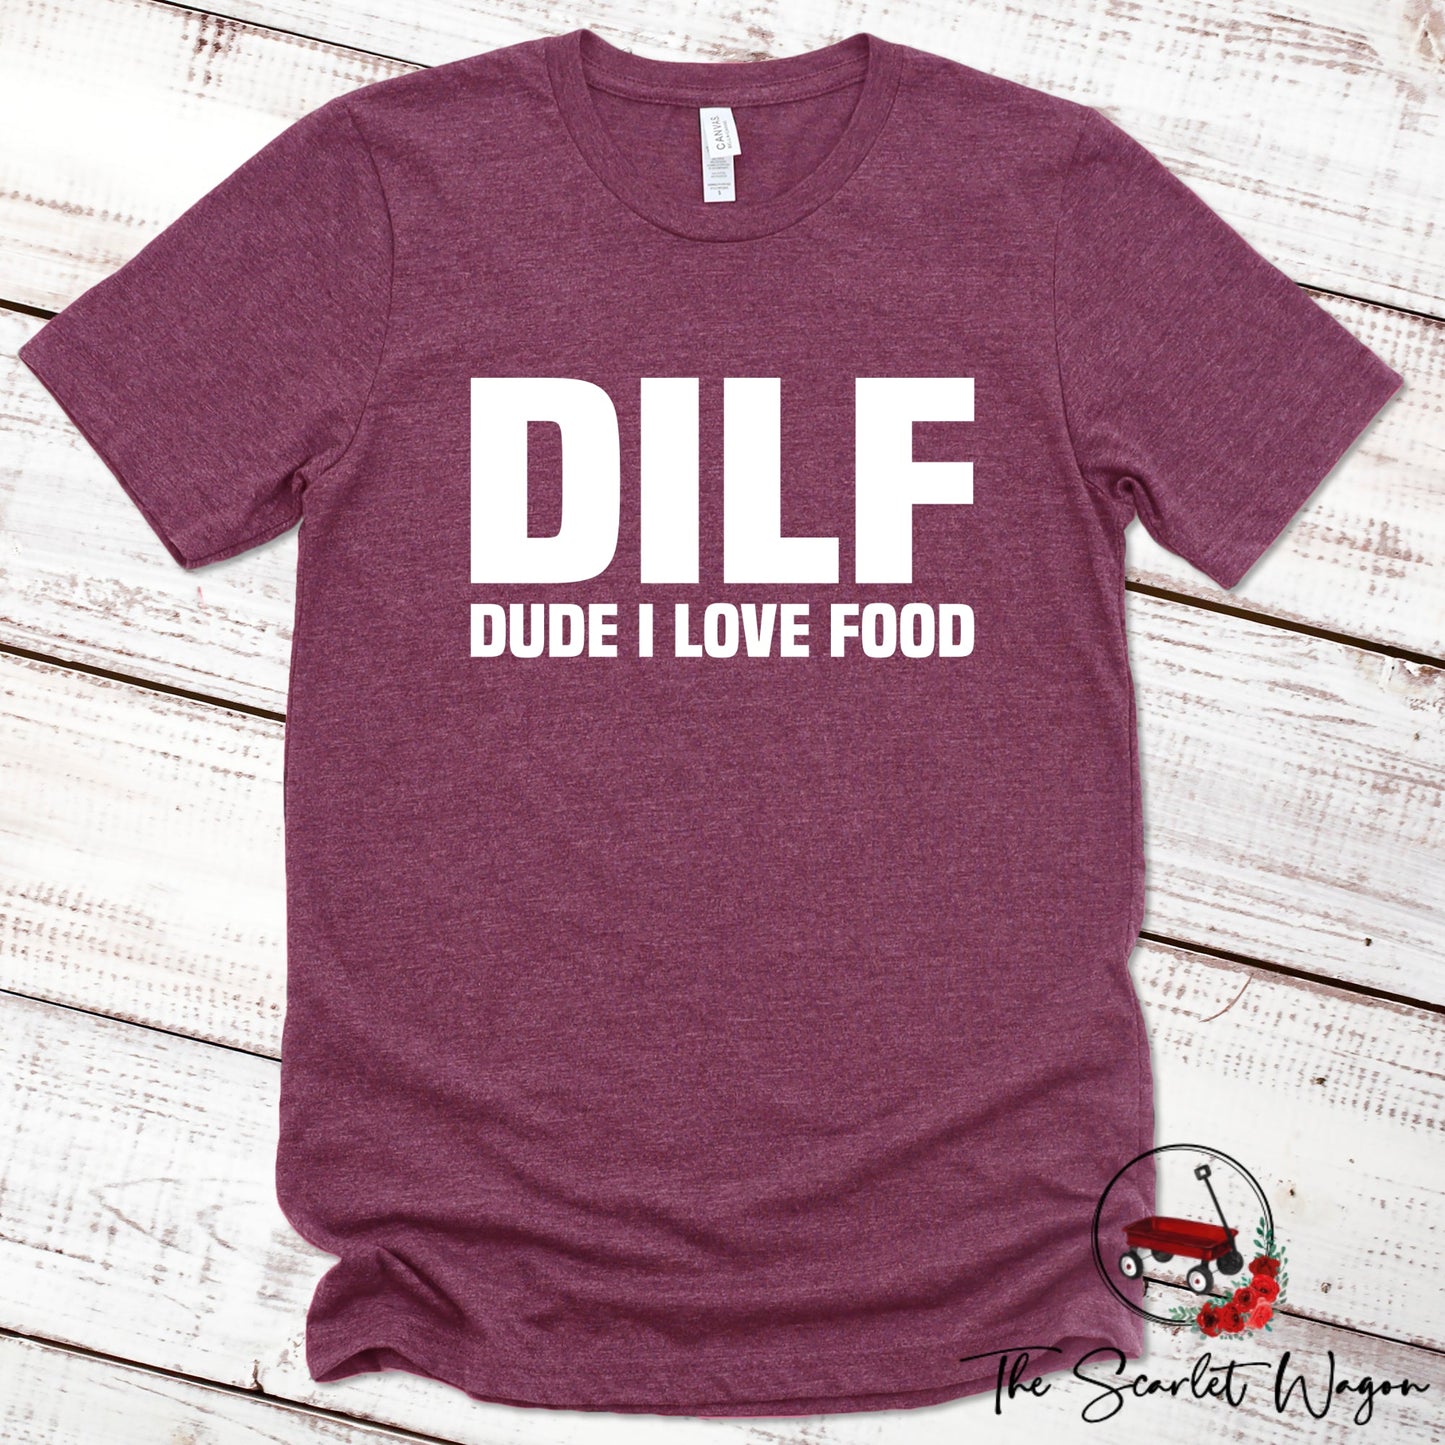 DILF - Dude I Love Food Premium Tee Scarlet Wagon Maroon XS 